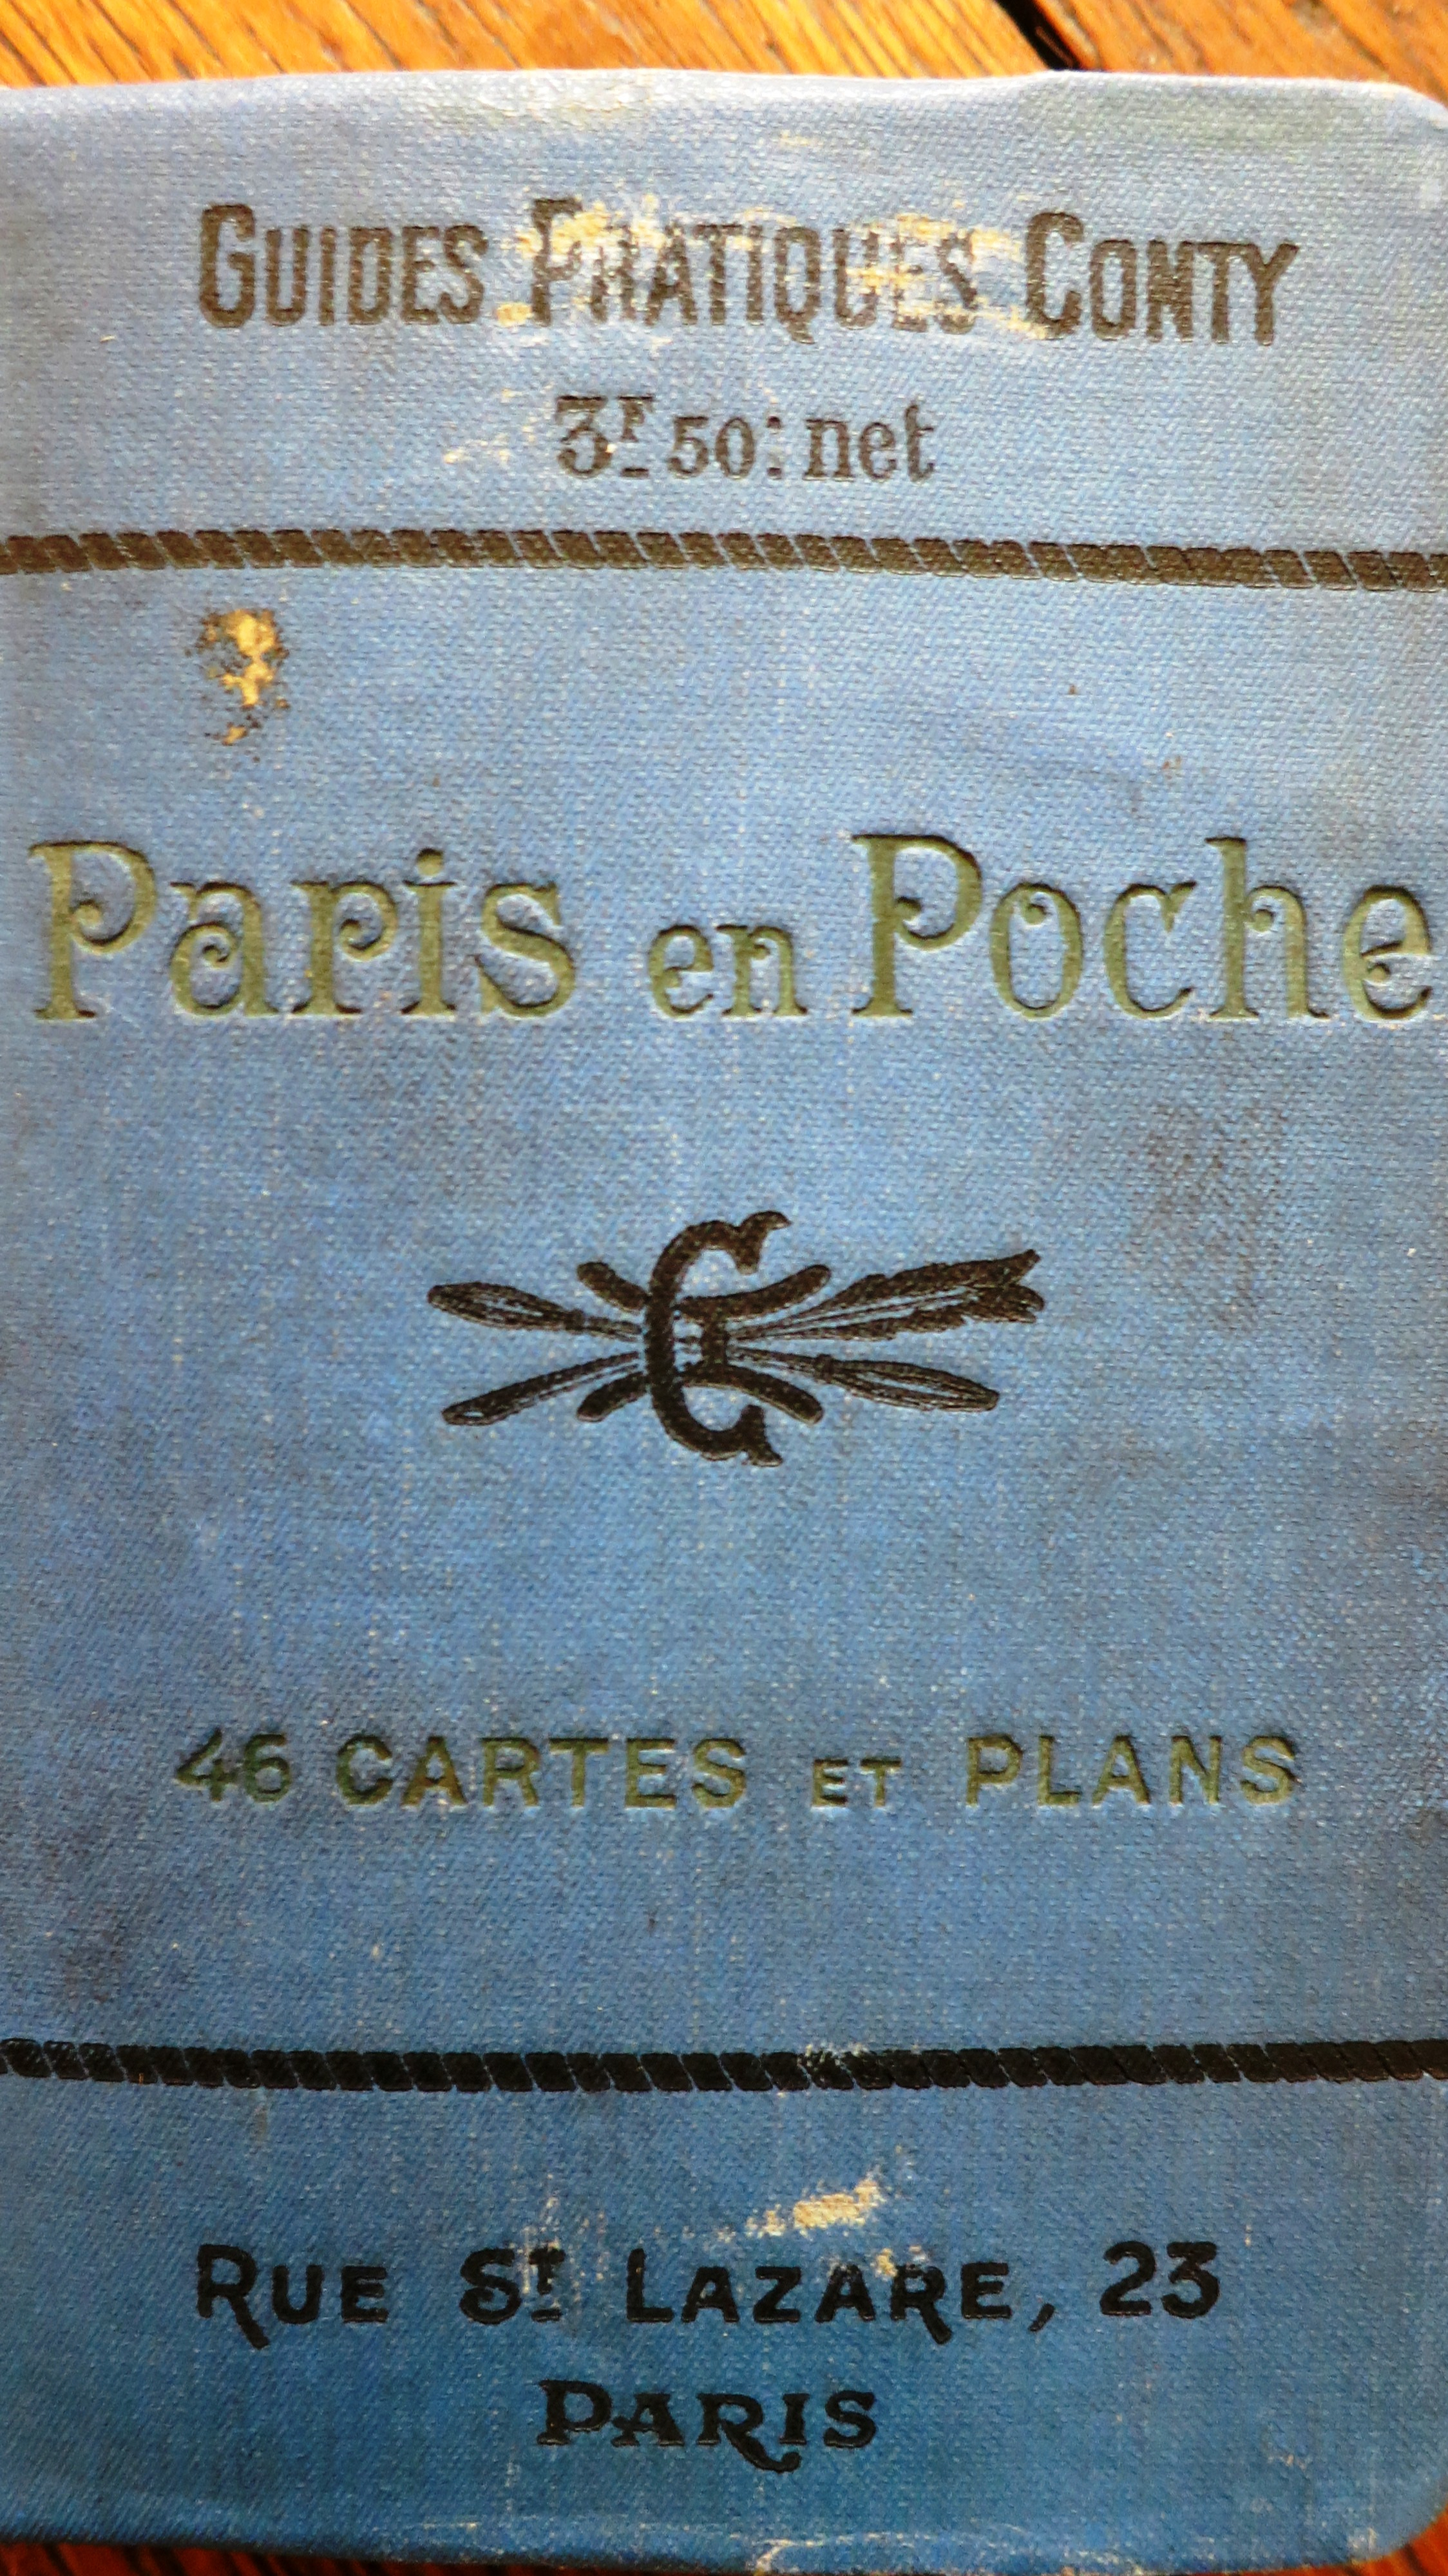 Guide pratique Conty Paris en poche